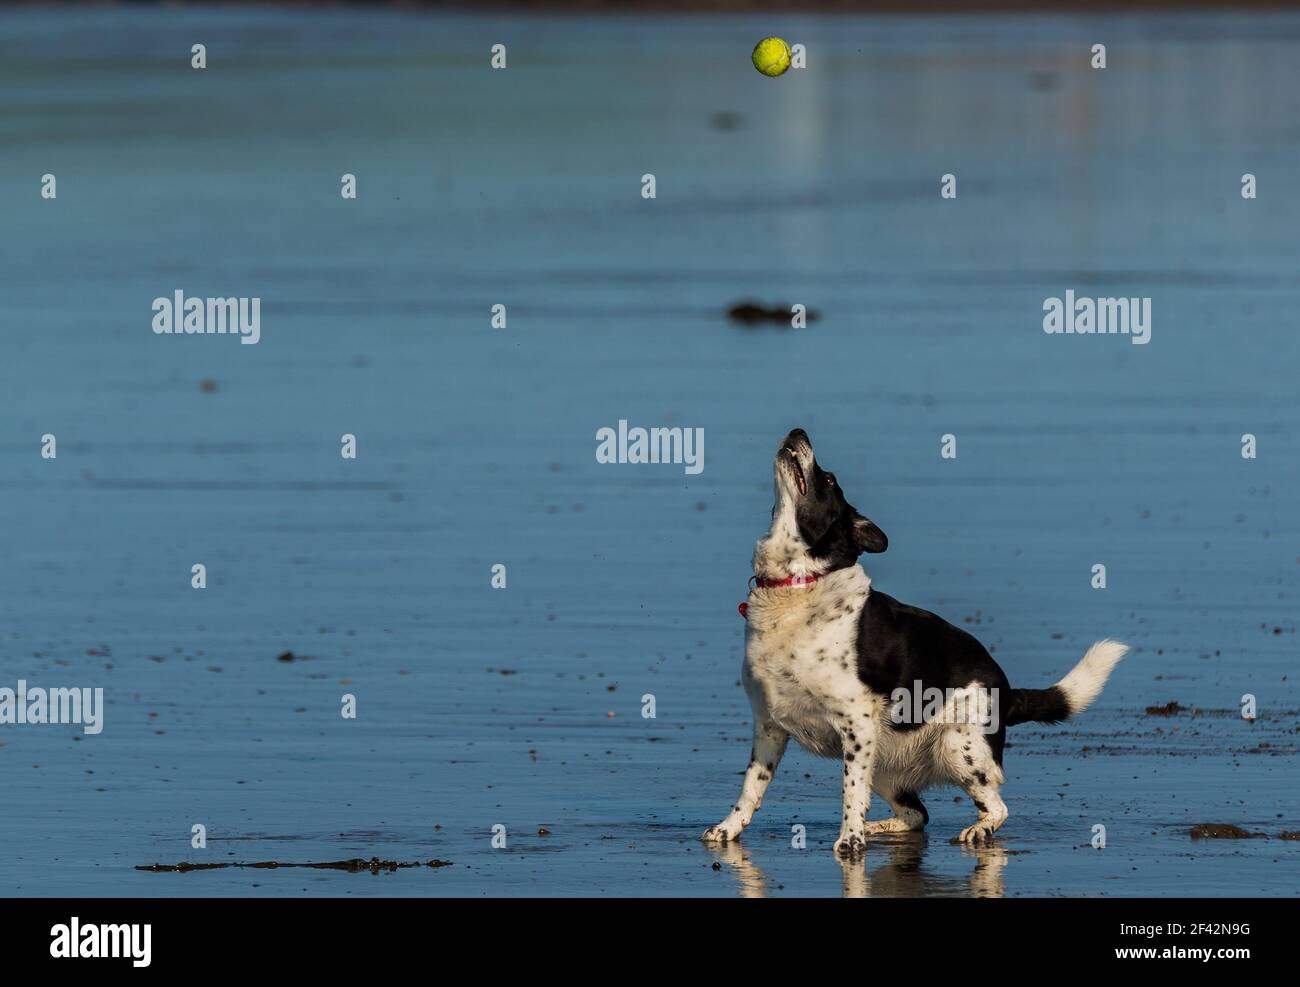 Schwarz-weißer Hund holt einen Tennisball an einem nassen Strand. Hund ist ein Border Collie. Schnellverschluss, um die Aktion einzufrieren. Stockfoto